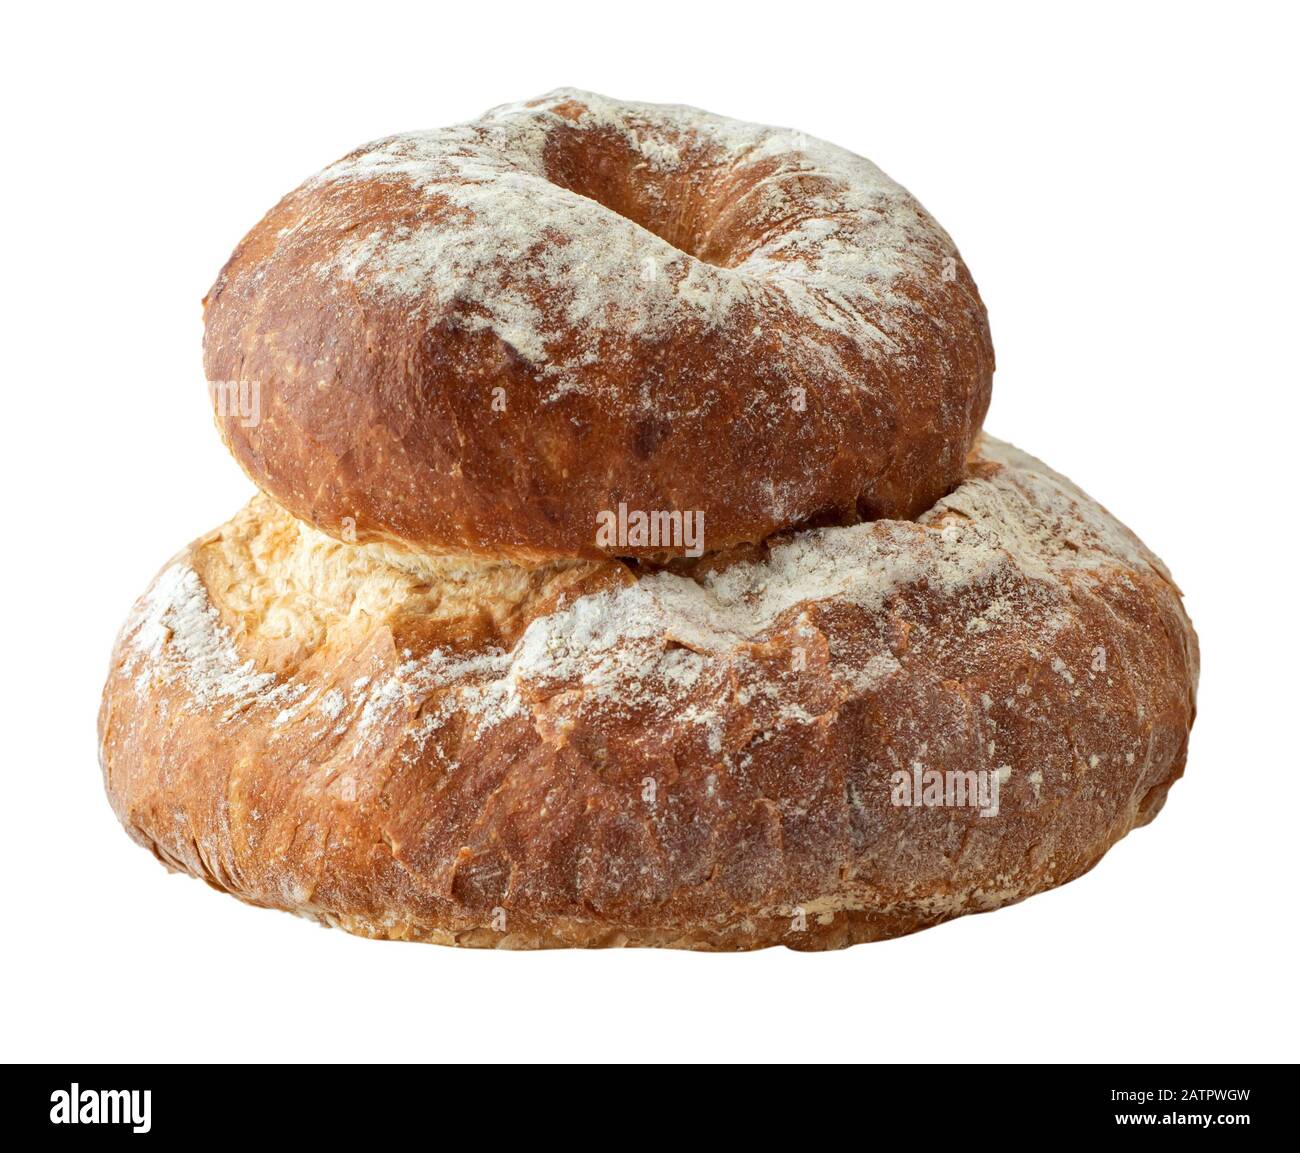 Imagen de pan de un pan redondo de casa aislada sobre un fondo blanco. Foto de stock